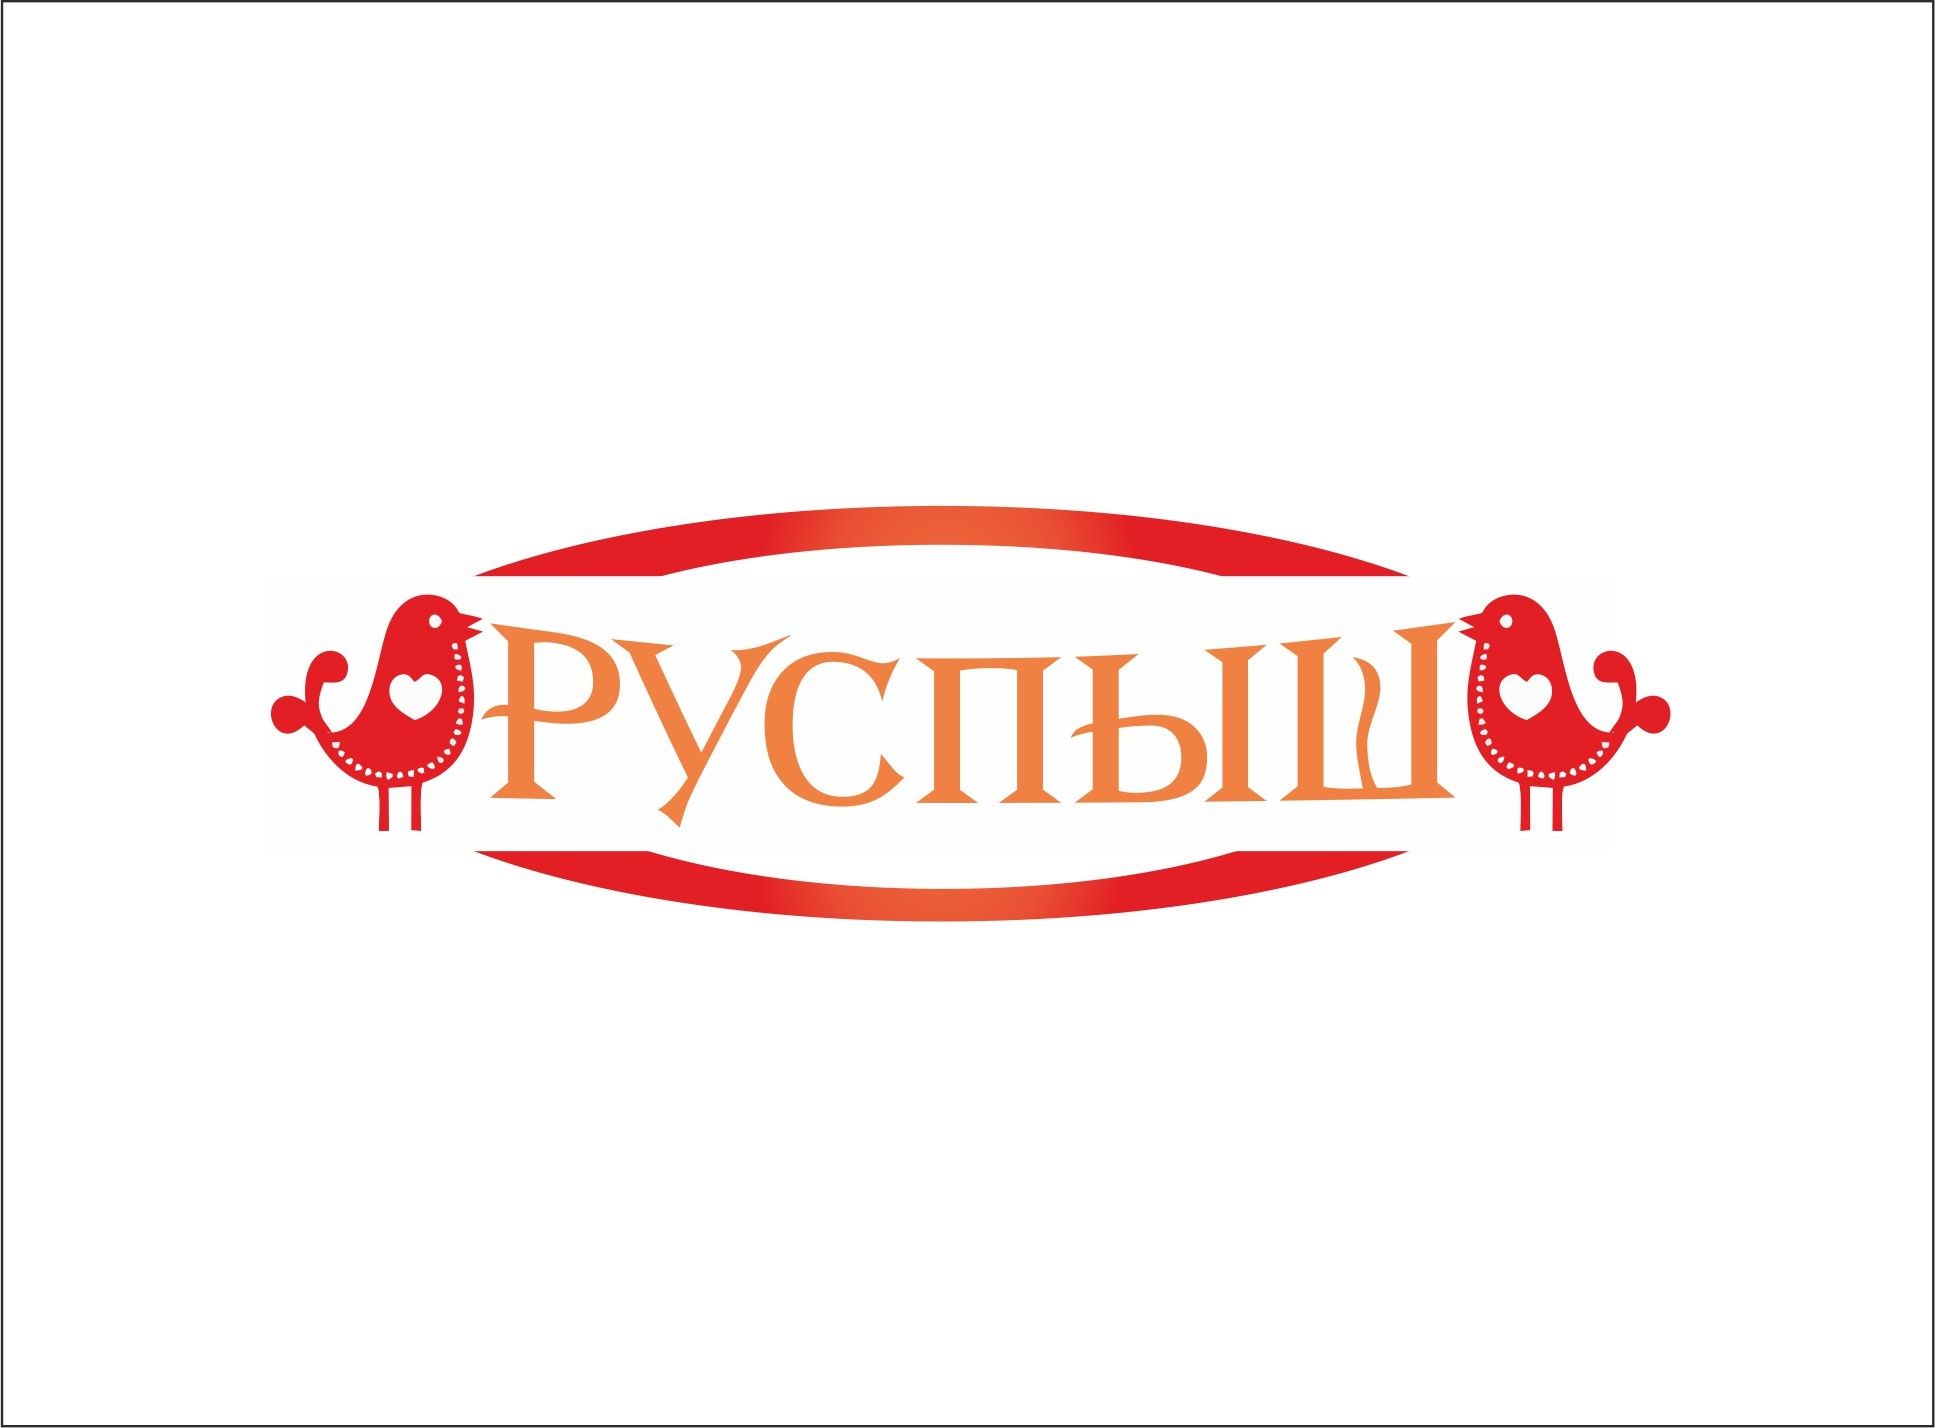 Логотип для РУСПЫШ - дизайнер Io75